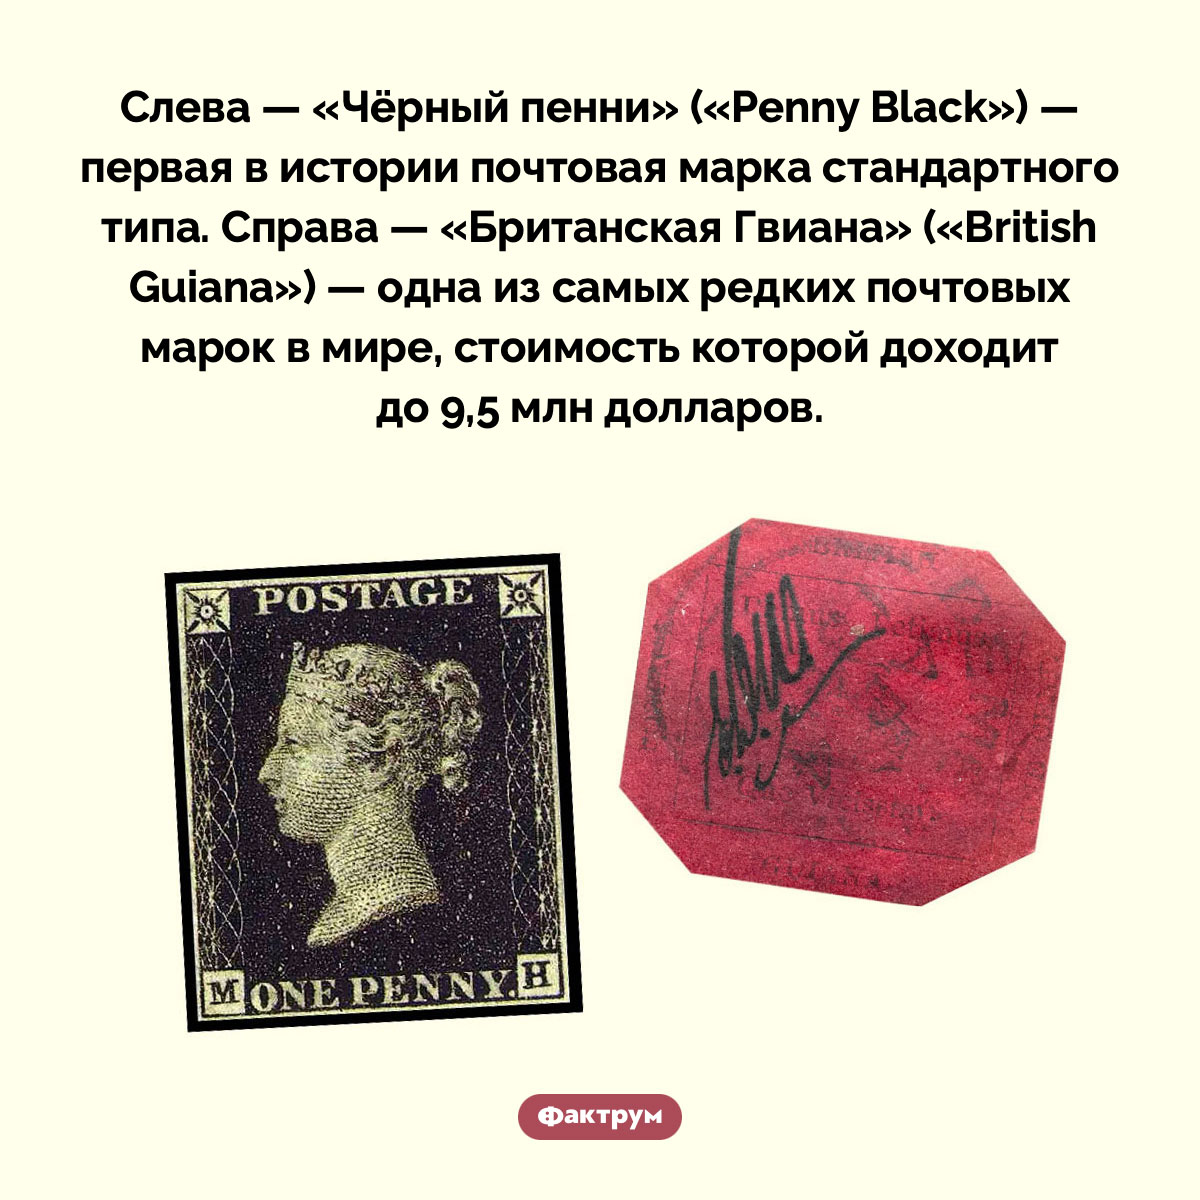 Две невероятно редкие почтовые марки. Слева — «Чёрный пенни» («Penny Black») — первая в истории почтовая марка стандартного типа. Справа — «Британская Гвиана» («British Guiana») — одна из самых редких почтовых марок в мире, стоимость которой доходит до 9,5 млн долларов.